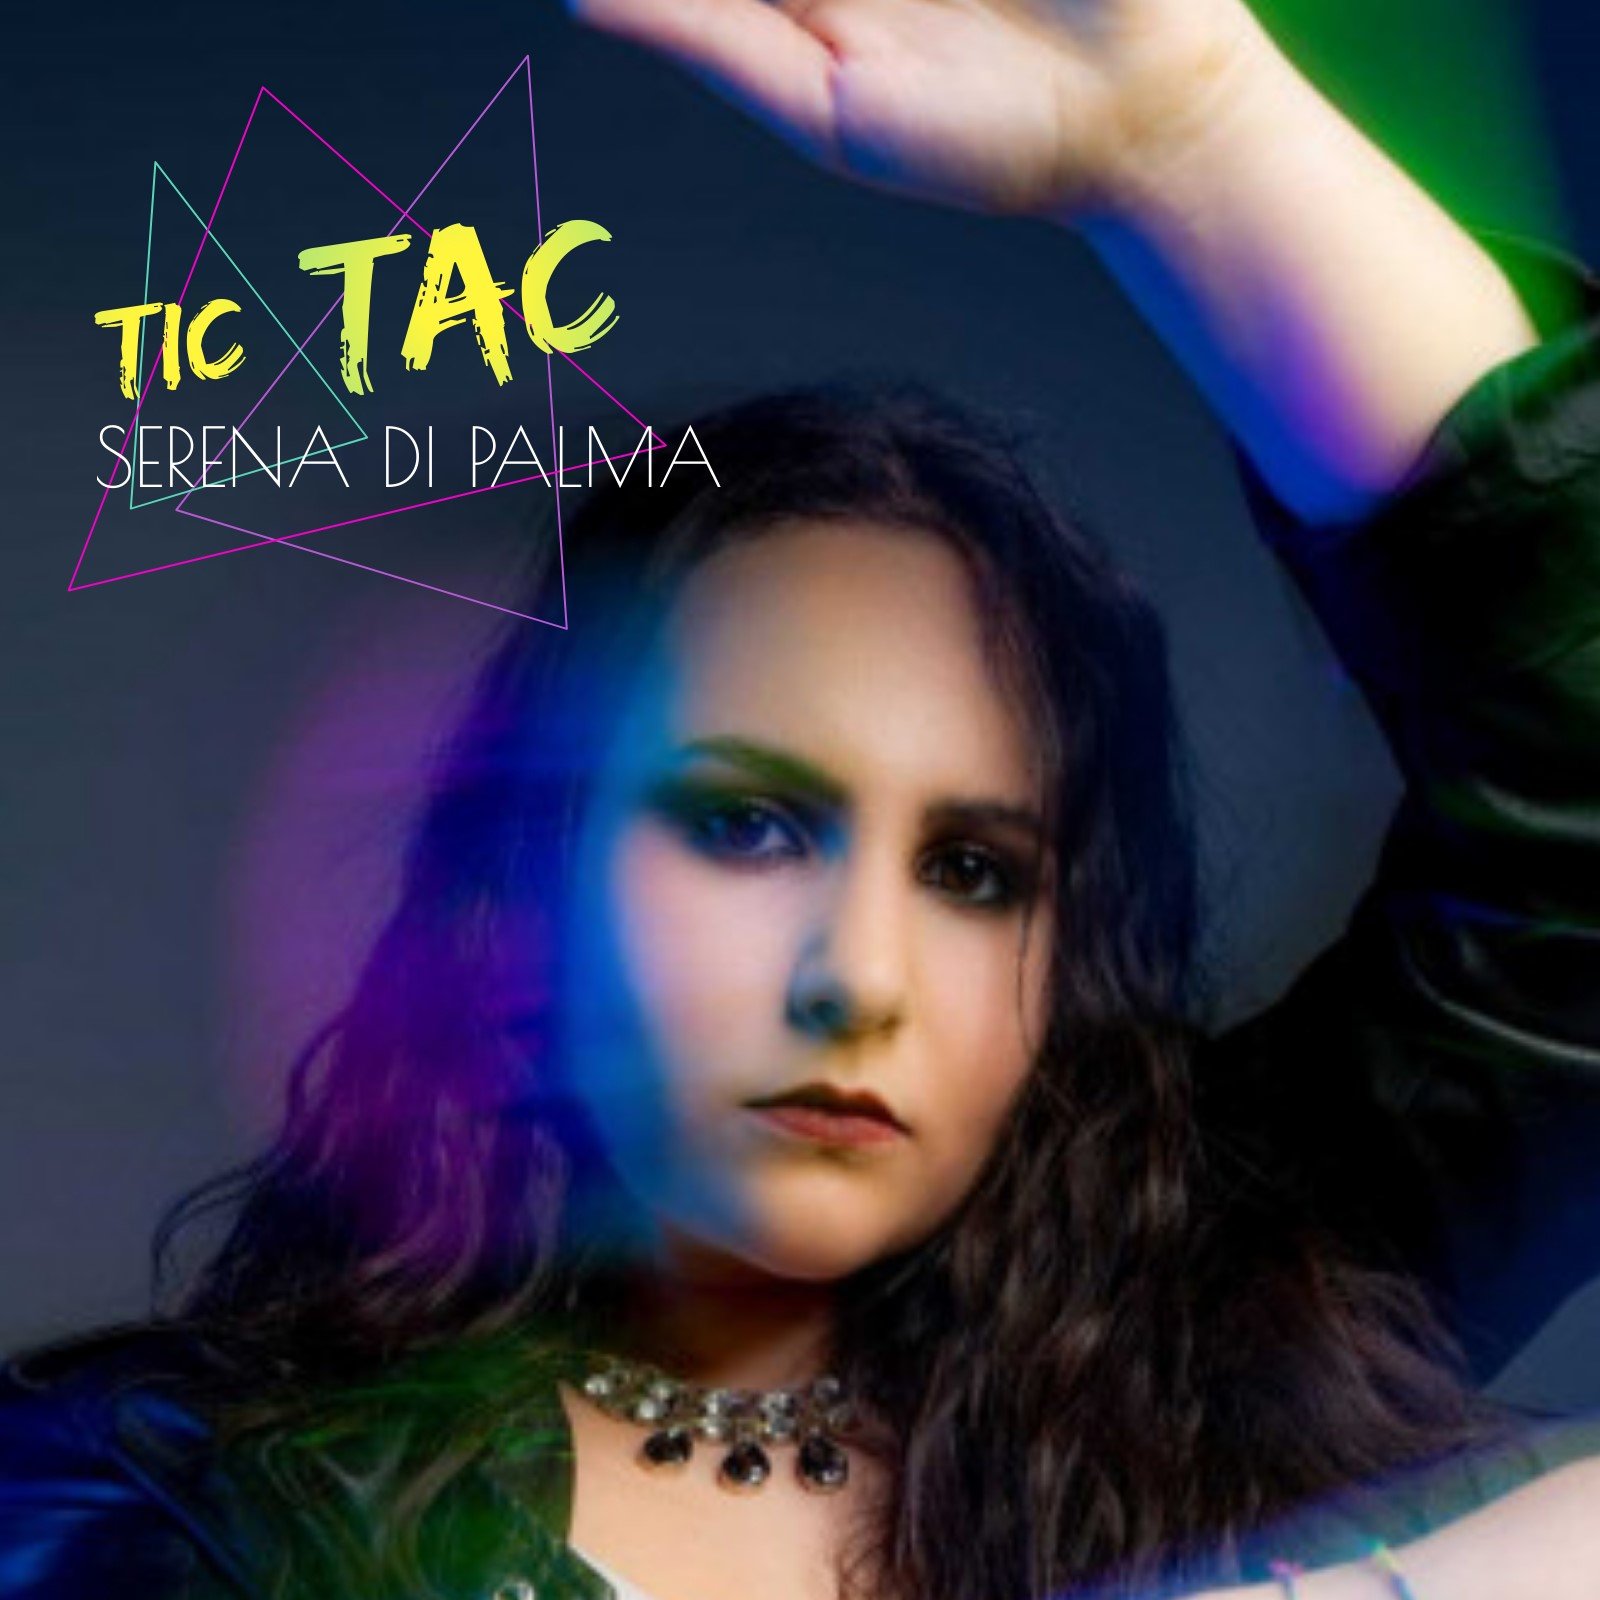 Serena Di Palma fuori con il suo primo singolo Tic Tac